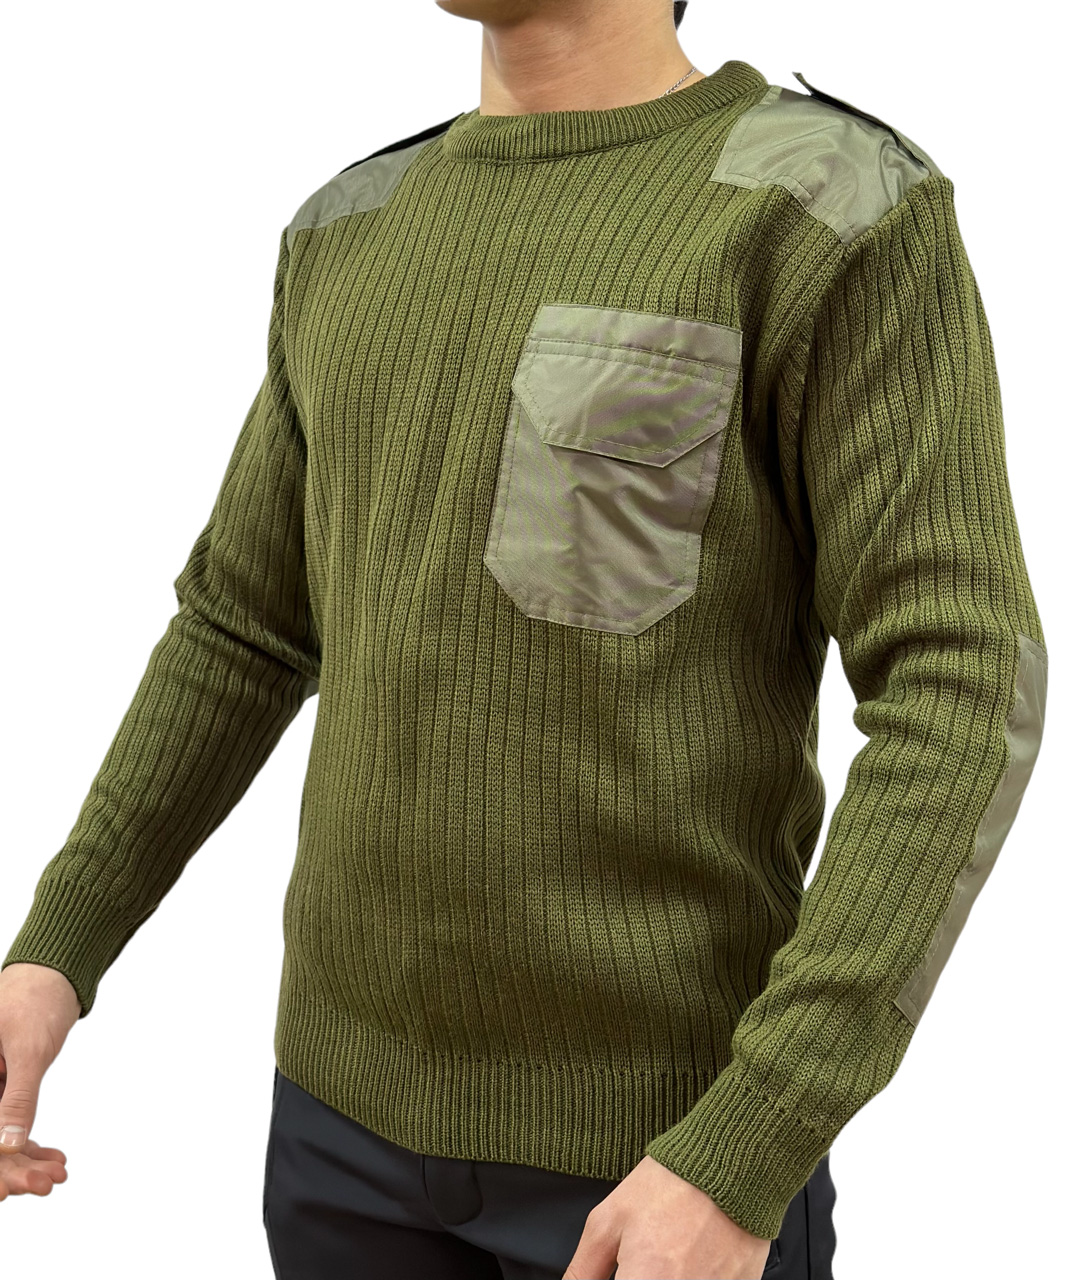 Купить свитер уставной оливкового цвета с карманом